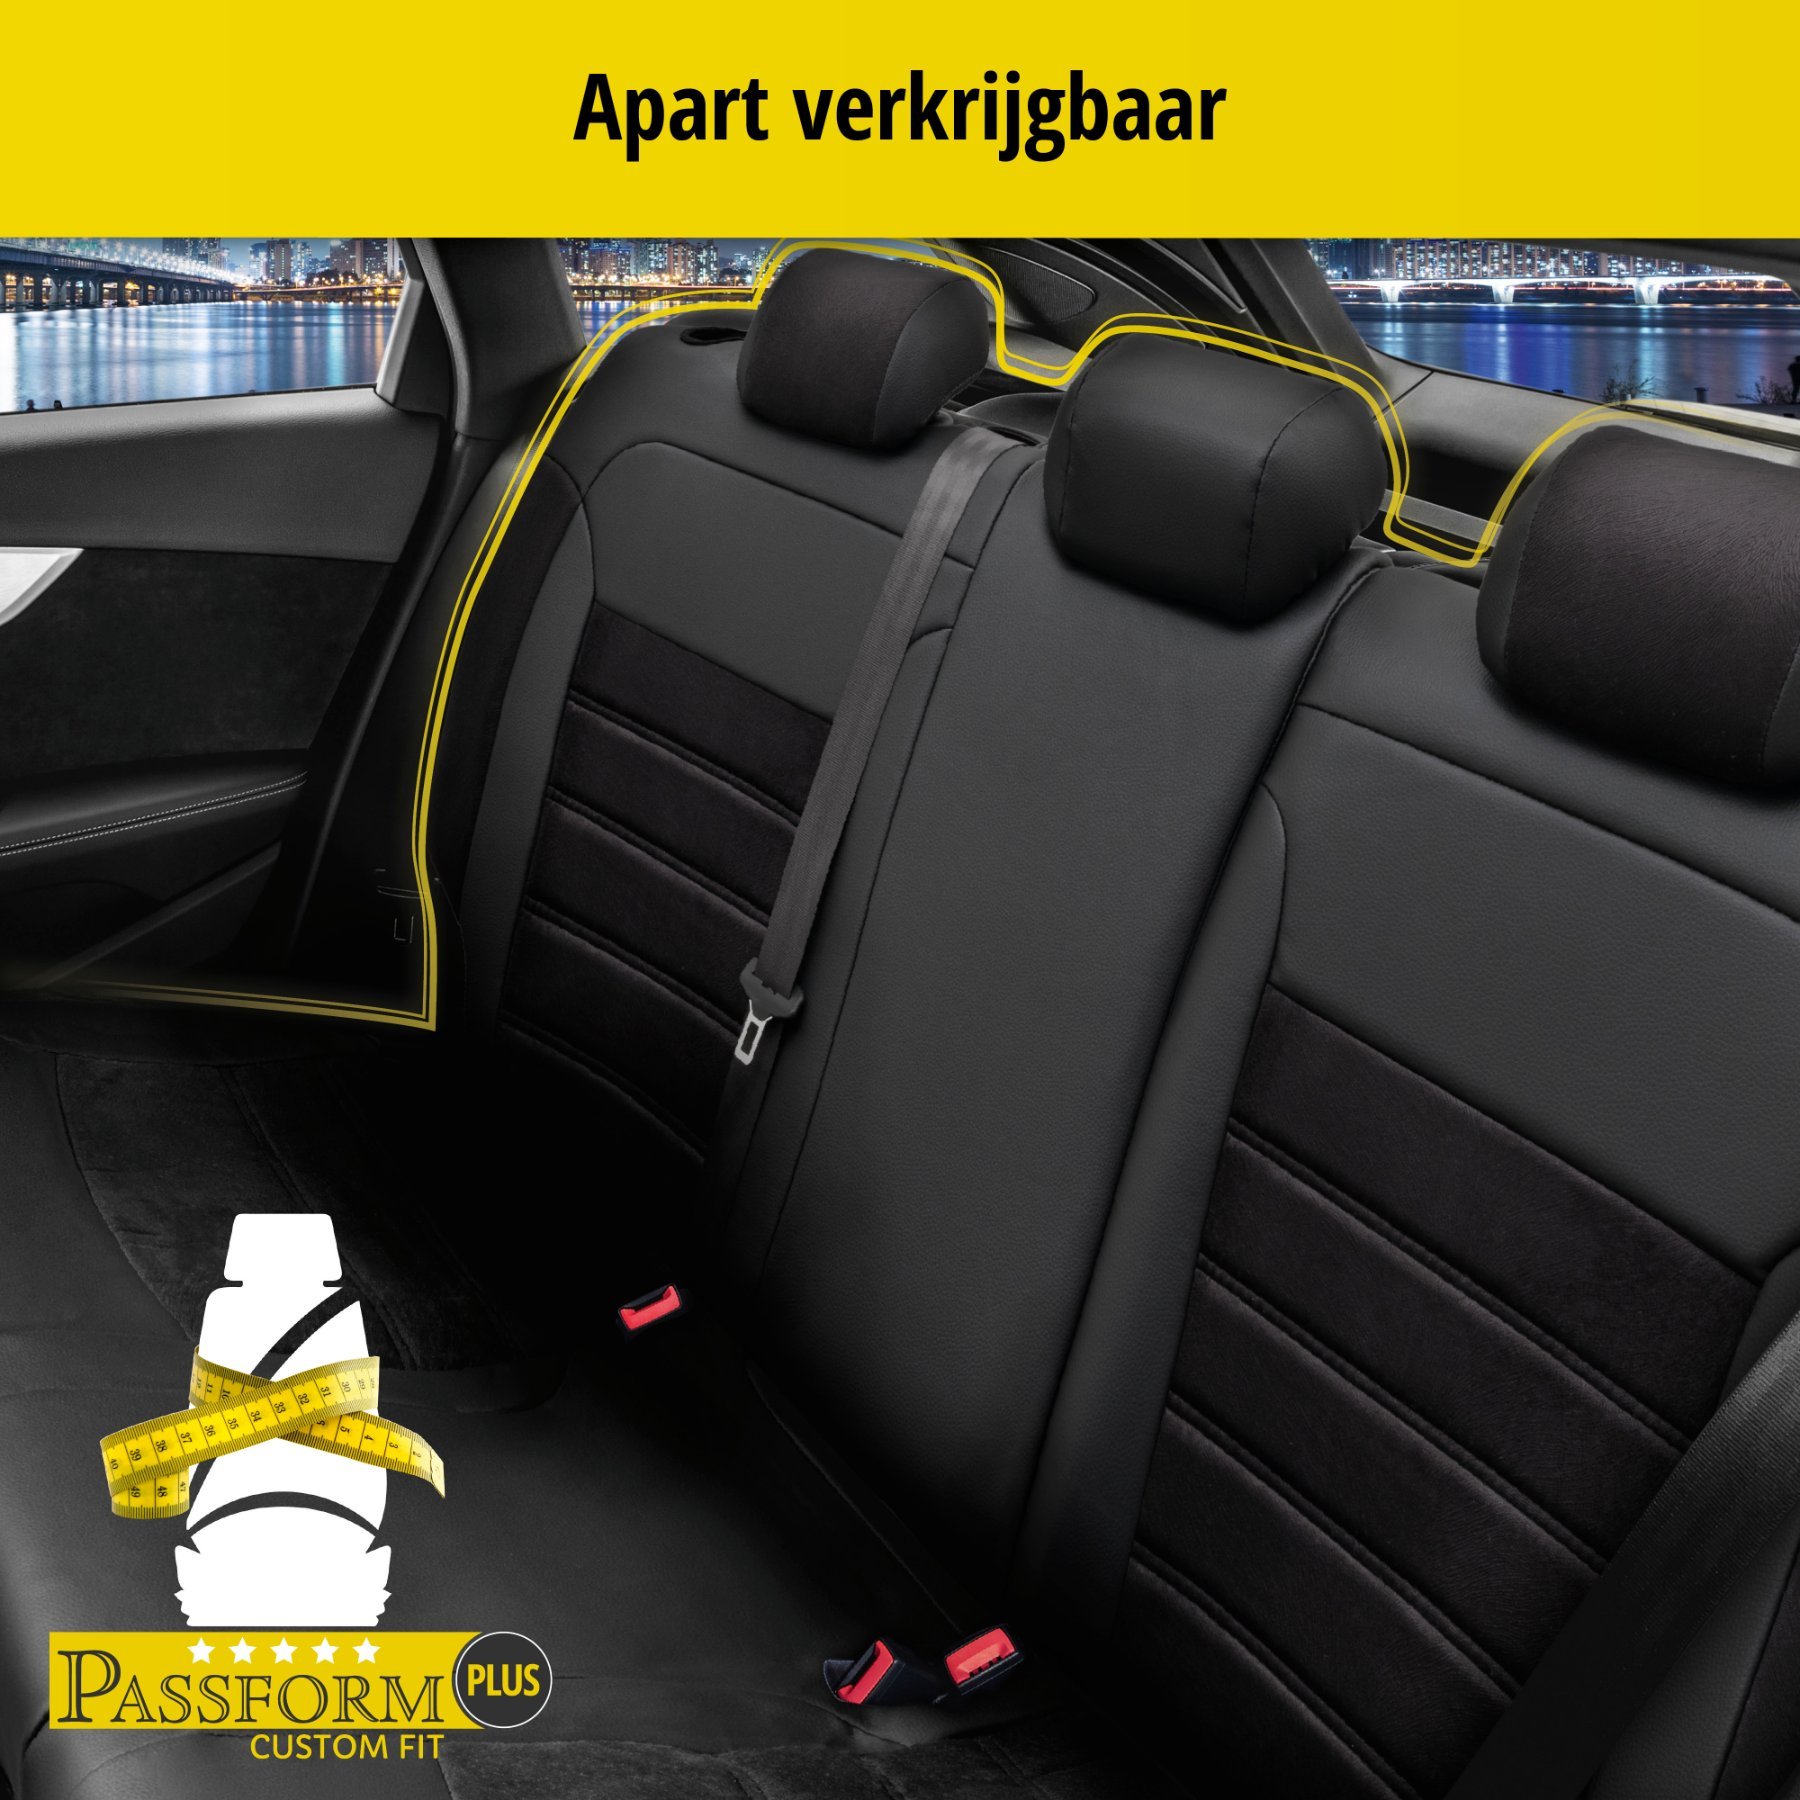 Auto stoelbekleding Bari geschikt voor BMW X1 (E84) 03/2009-06/2015, 2 enkele zetelhoezen voor standard zetels